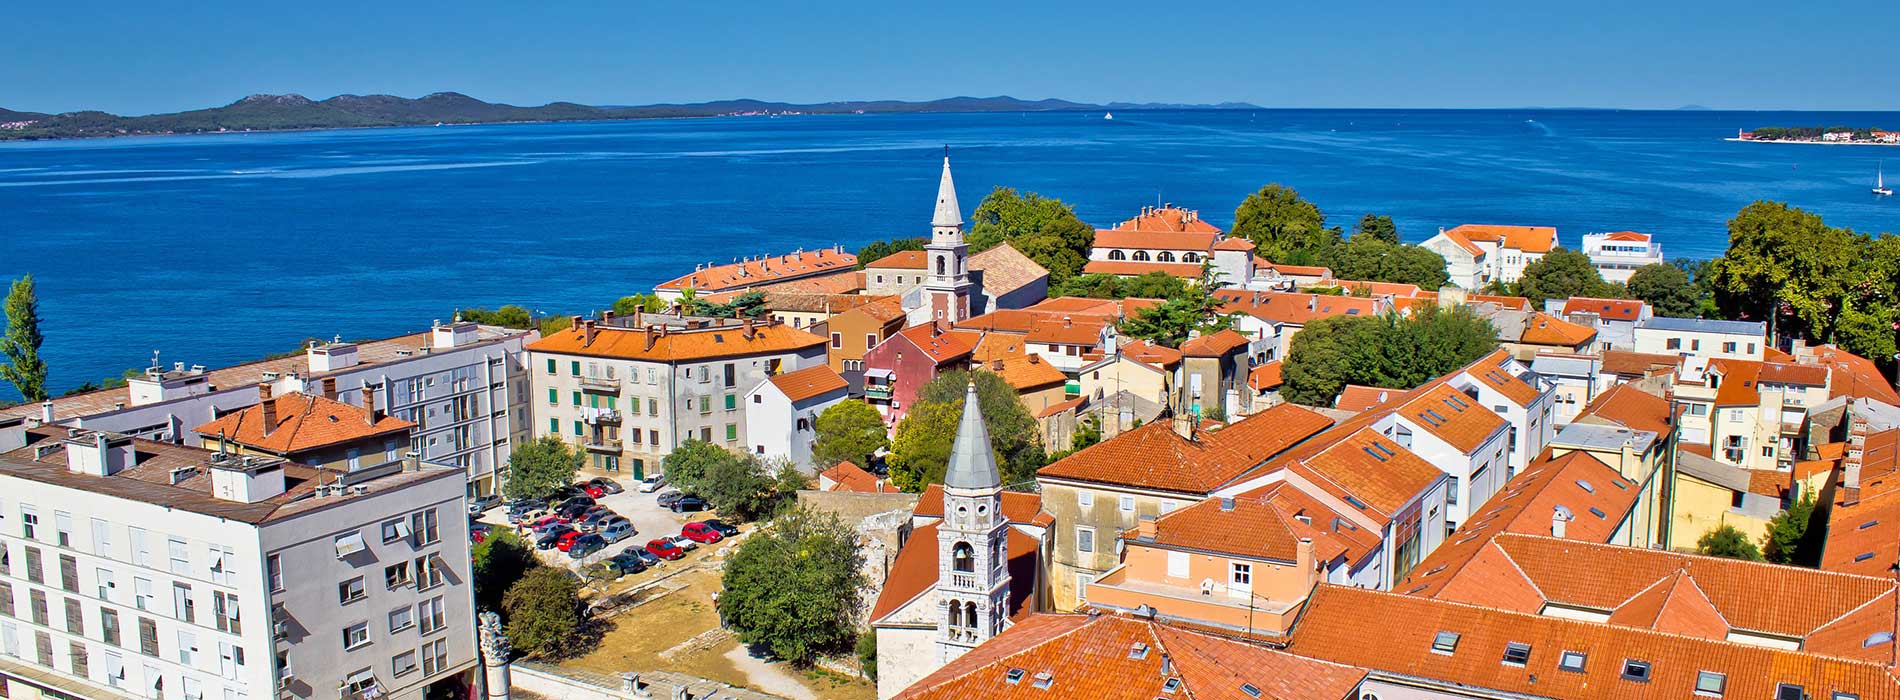 Colorful city of Zadar.jpg